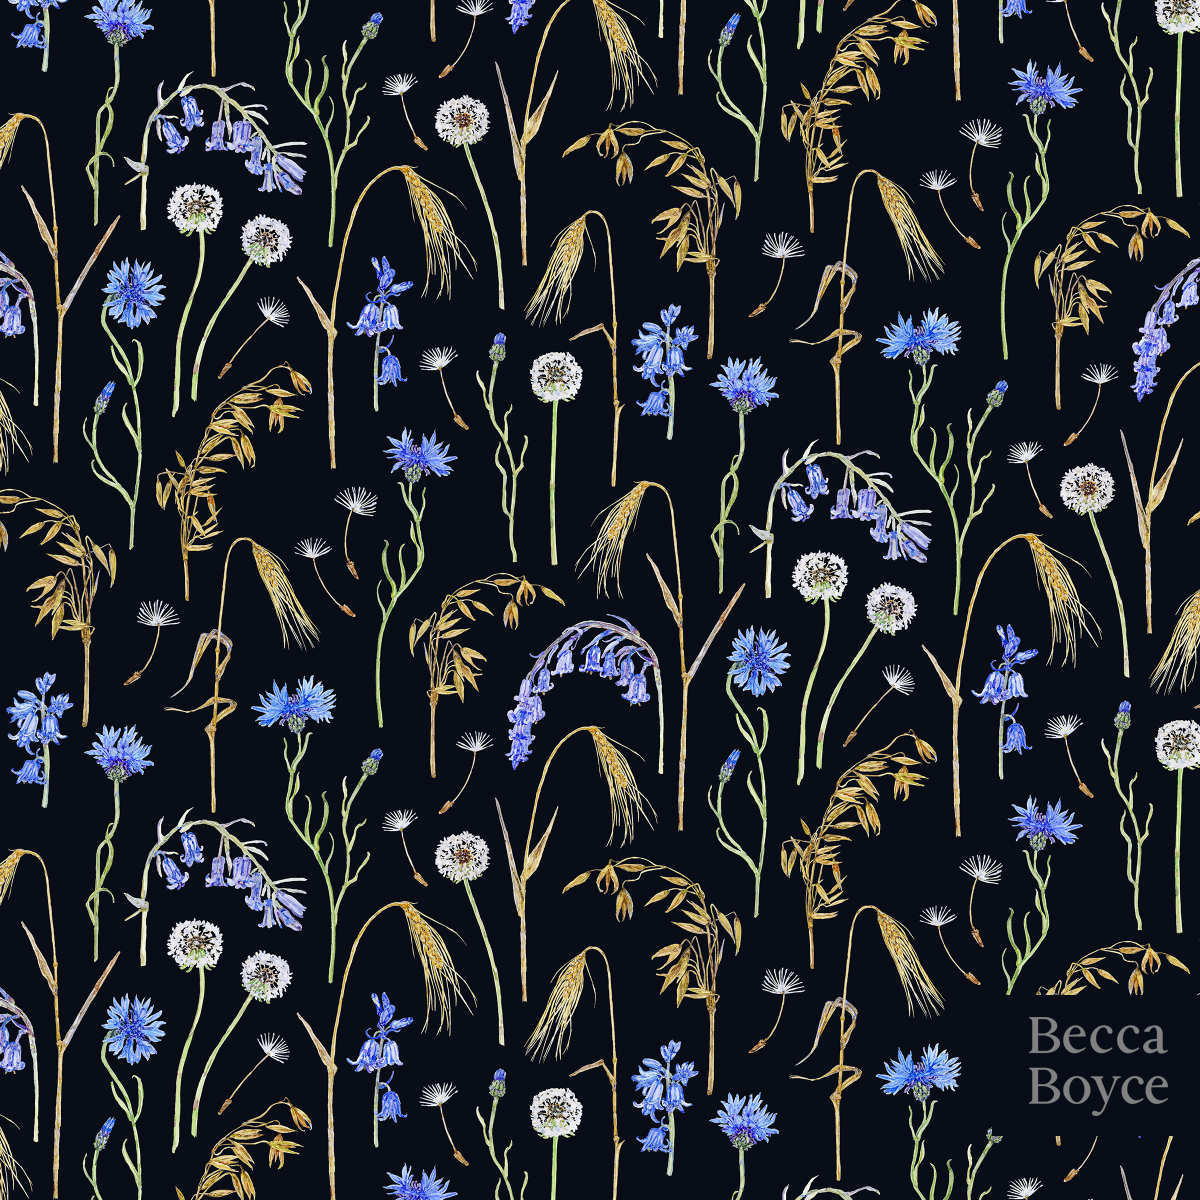 Meadow pattern of dandelions, bluebells, oats, wheat, corn flowers painted in watercolour